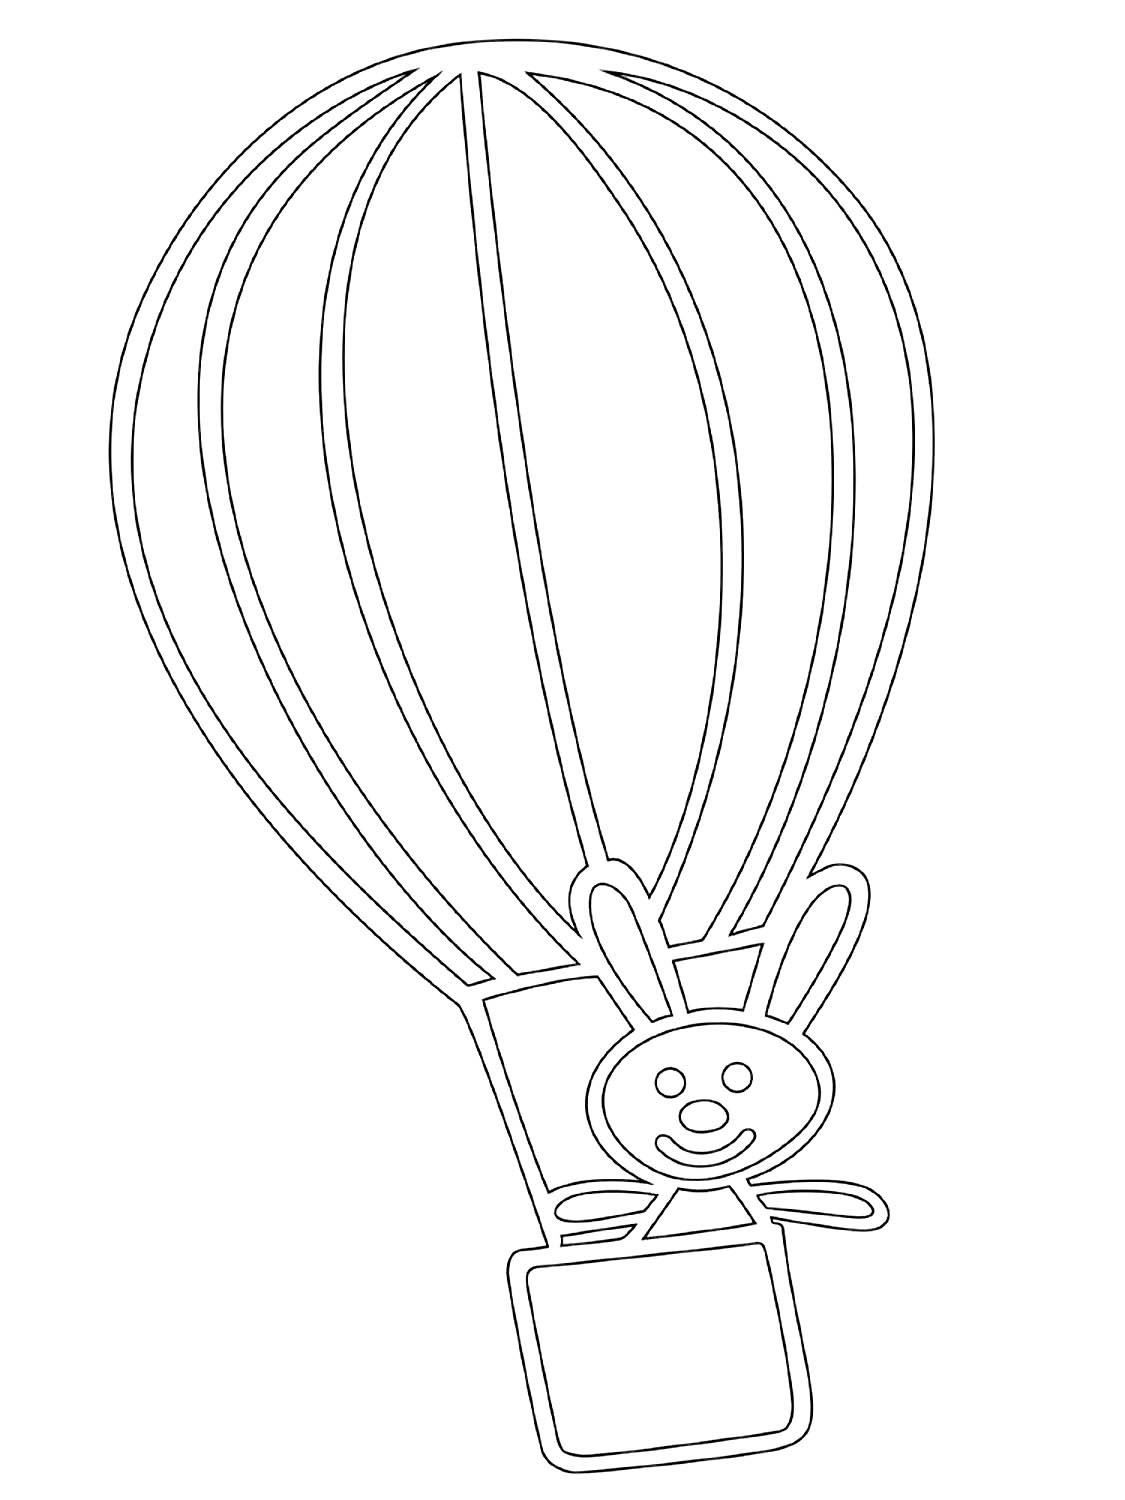 Раскраски шарика распечатать. Воздушный шар раскраска. Воздушный шар с корзиной трафарет. Воздушный шар раскраска для детей. Воздушные шары для раскрашивания детям.